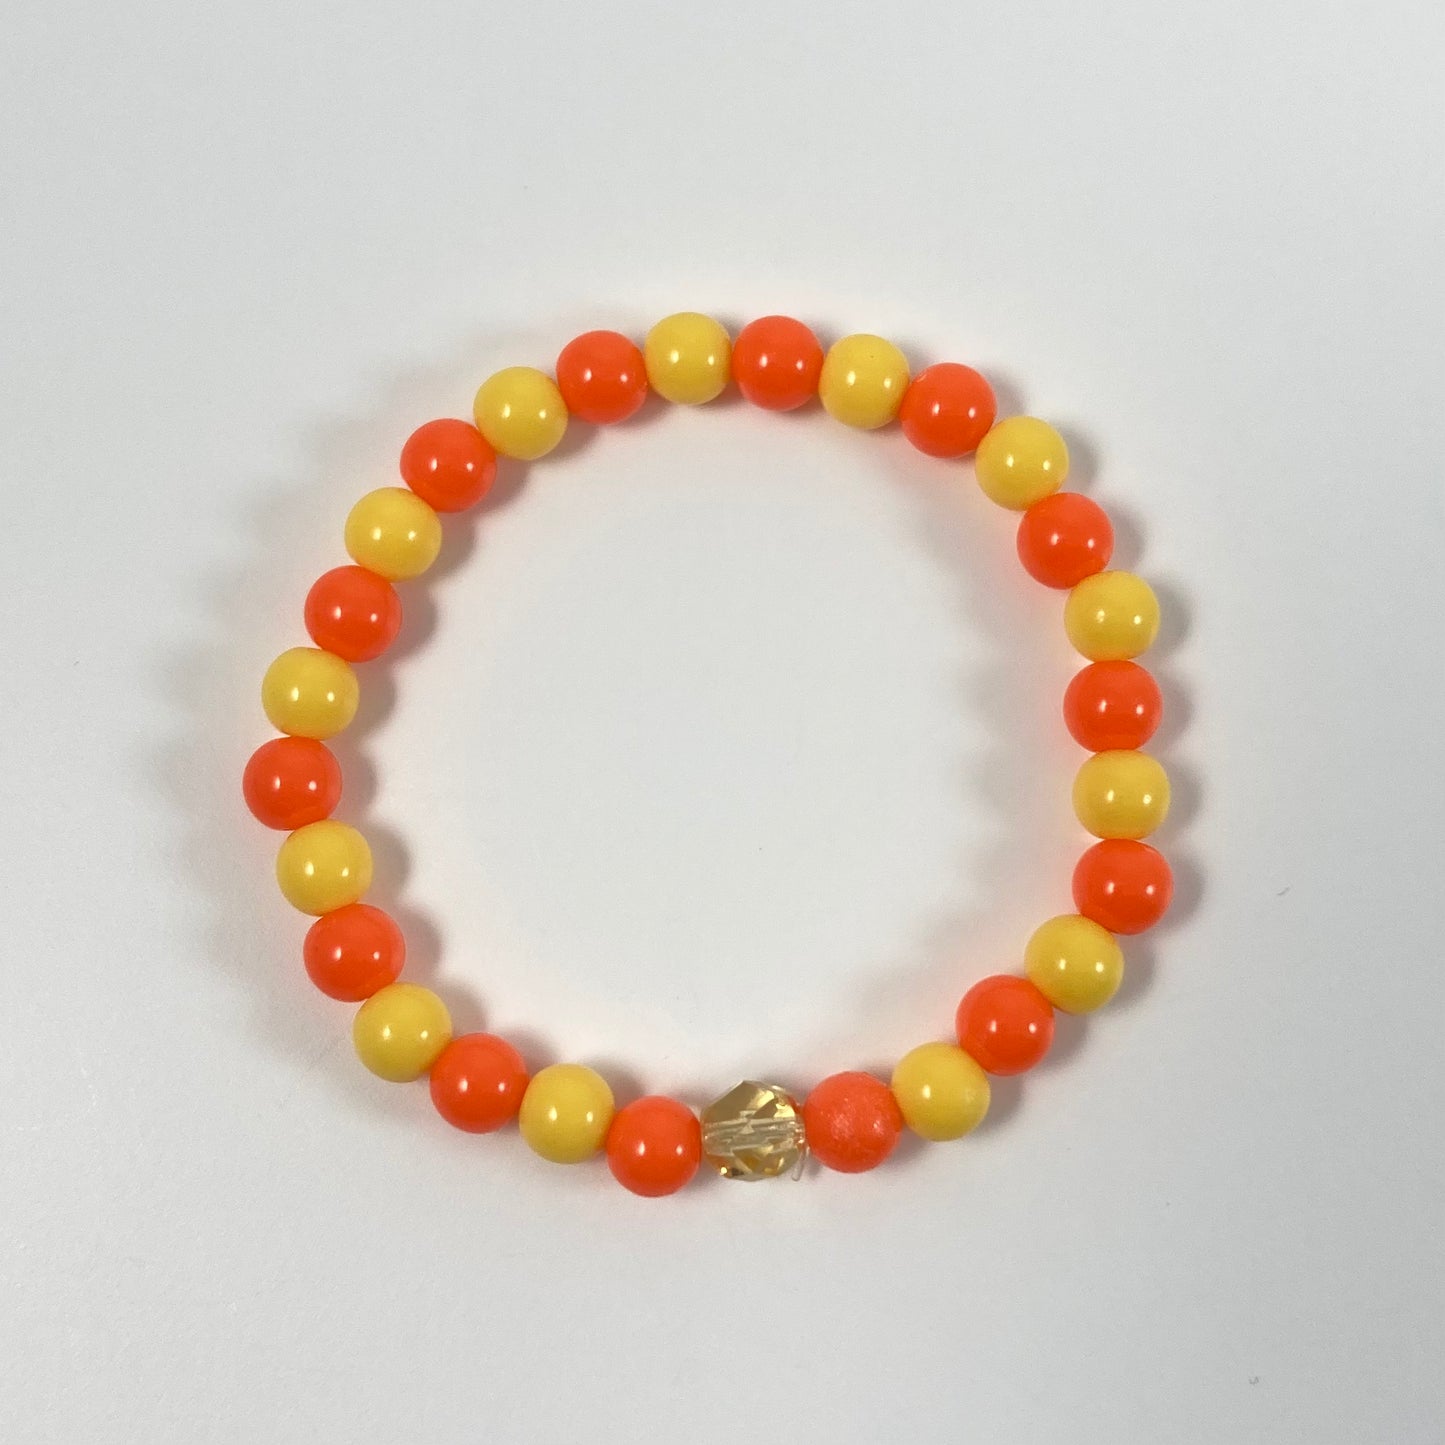 B24-GB4 - Yellow & Orange Stretch Bracelet